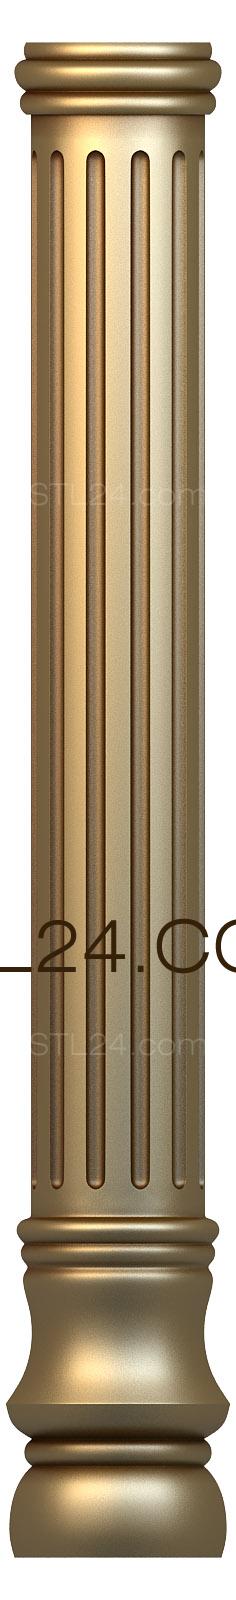 3d stl модель колонны, классический стиль